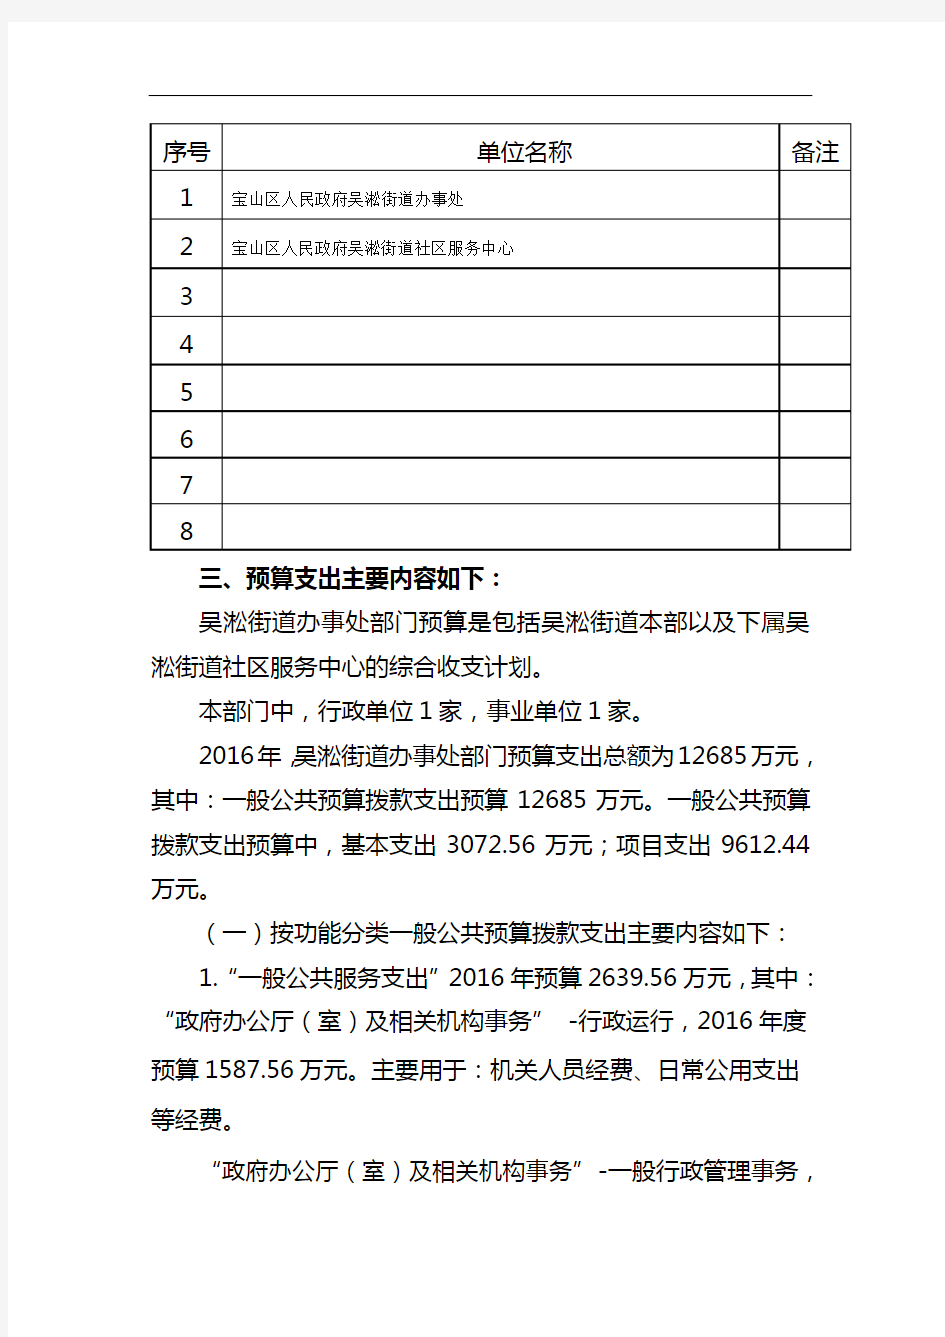 2016年吴淞街道部门预算编制说明